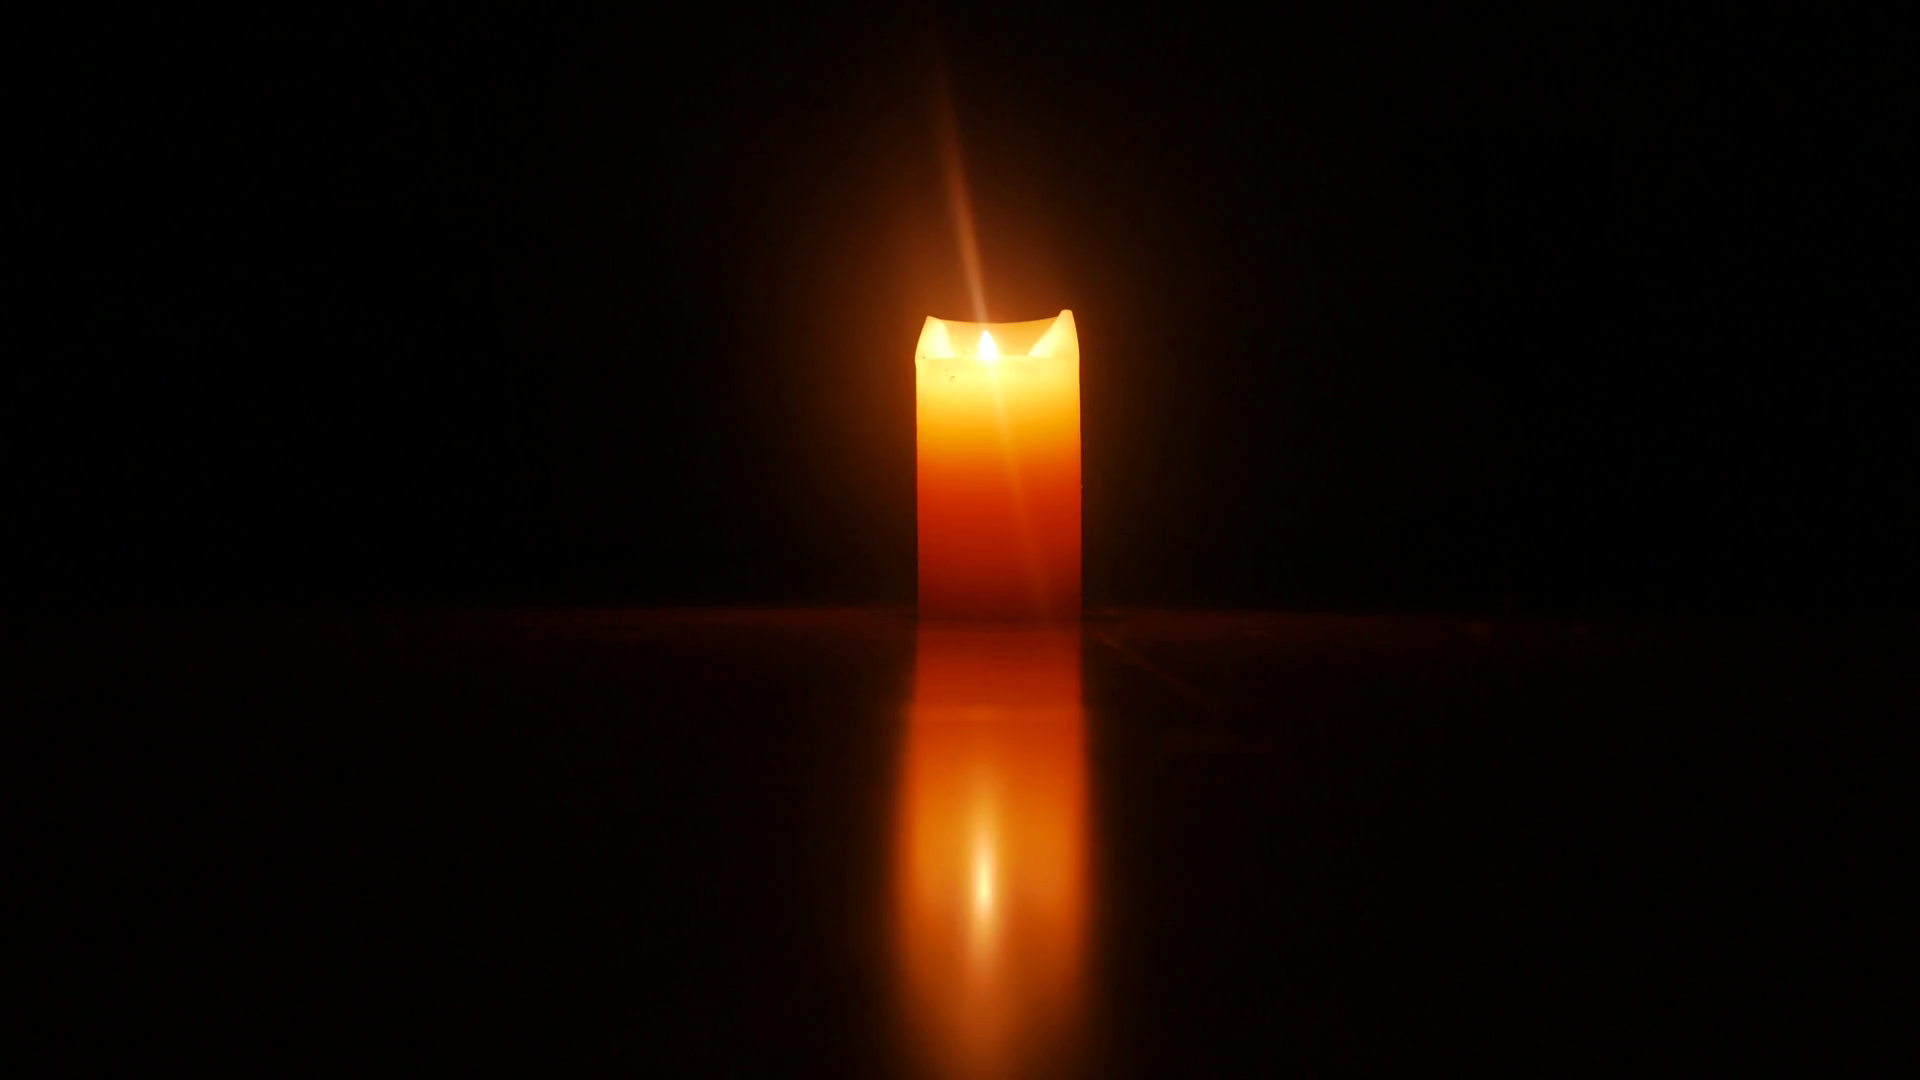 Burning candle photo